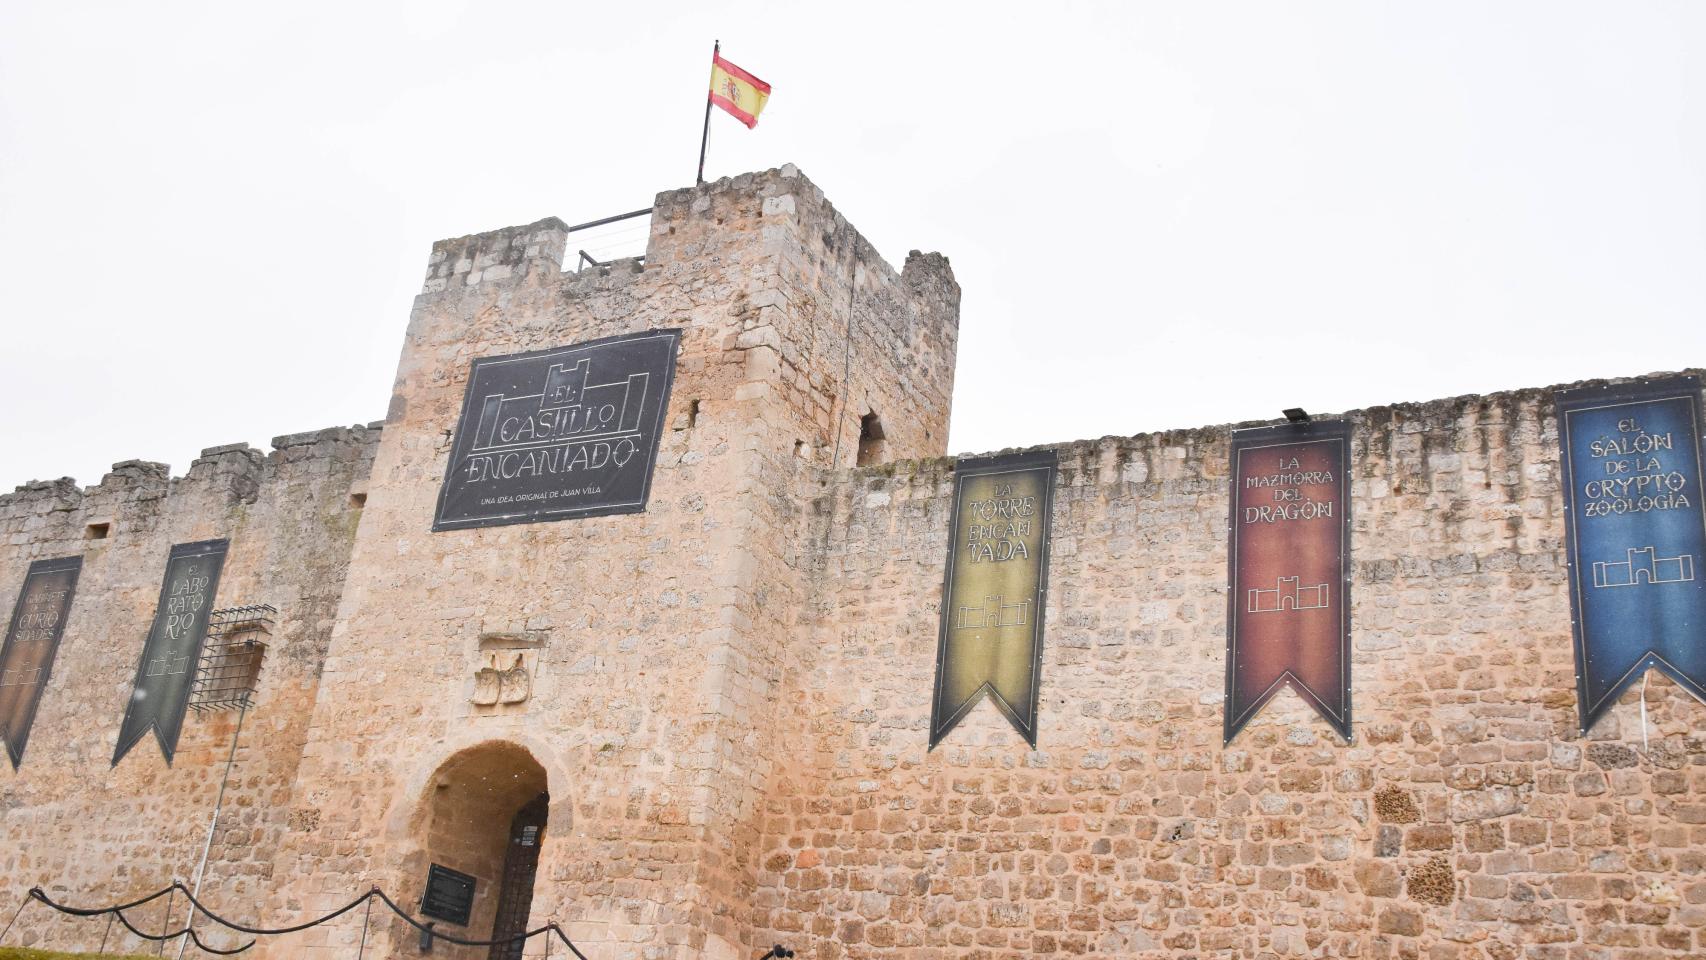 La nueva sala del Castillo Encantado de Trigueros del Valle